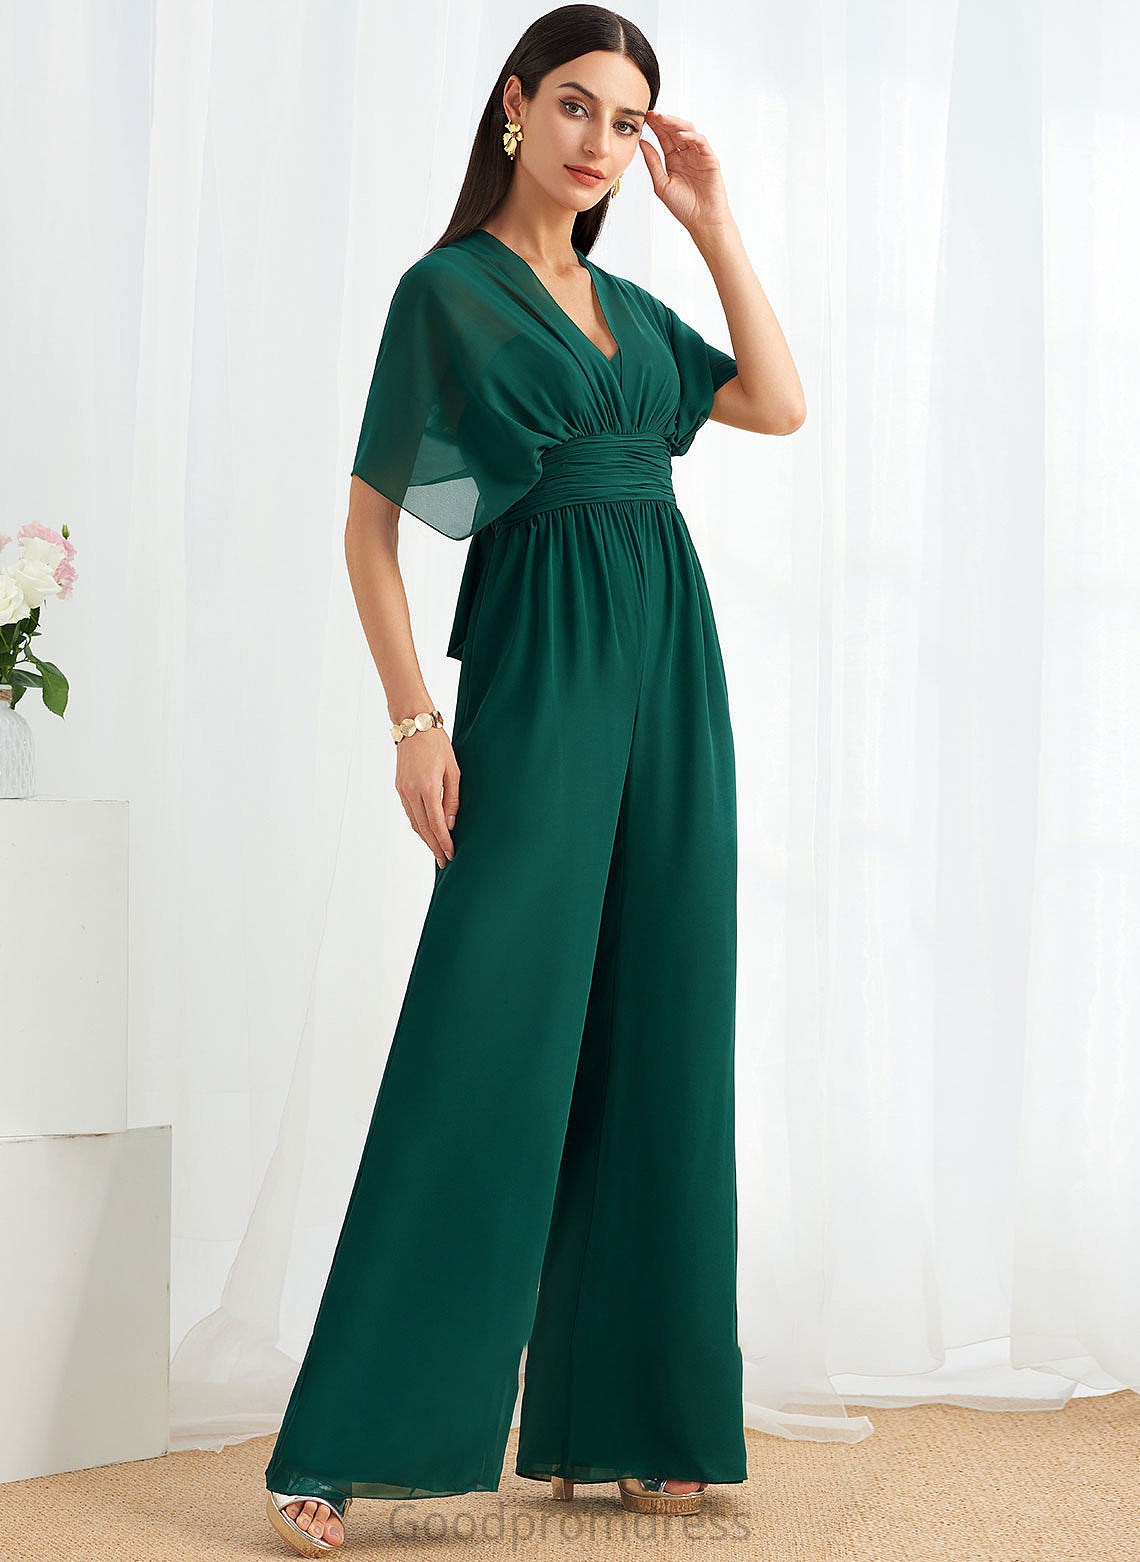 One-Shoulder Fabric Halter Embellishment Ruffle Length HighNeck V-neck Straps Floor-Length Neckline Jayla Bridesmaid Dresses